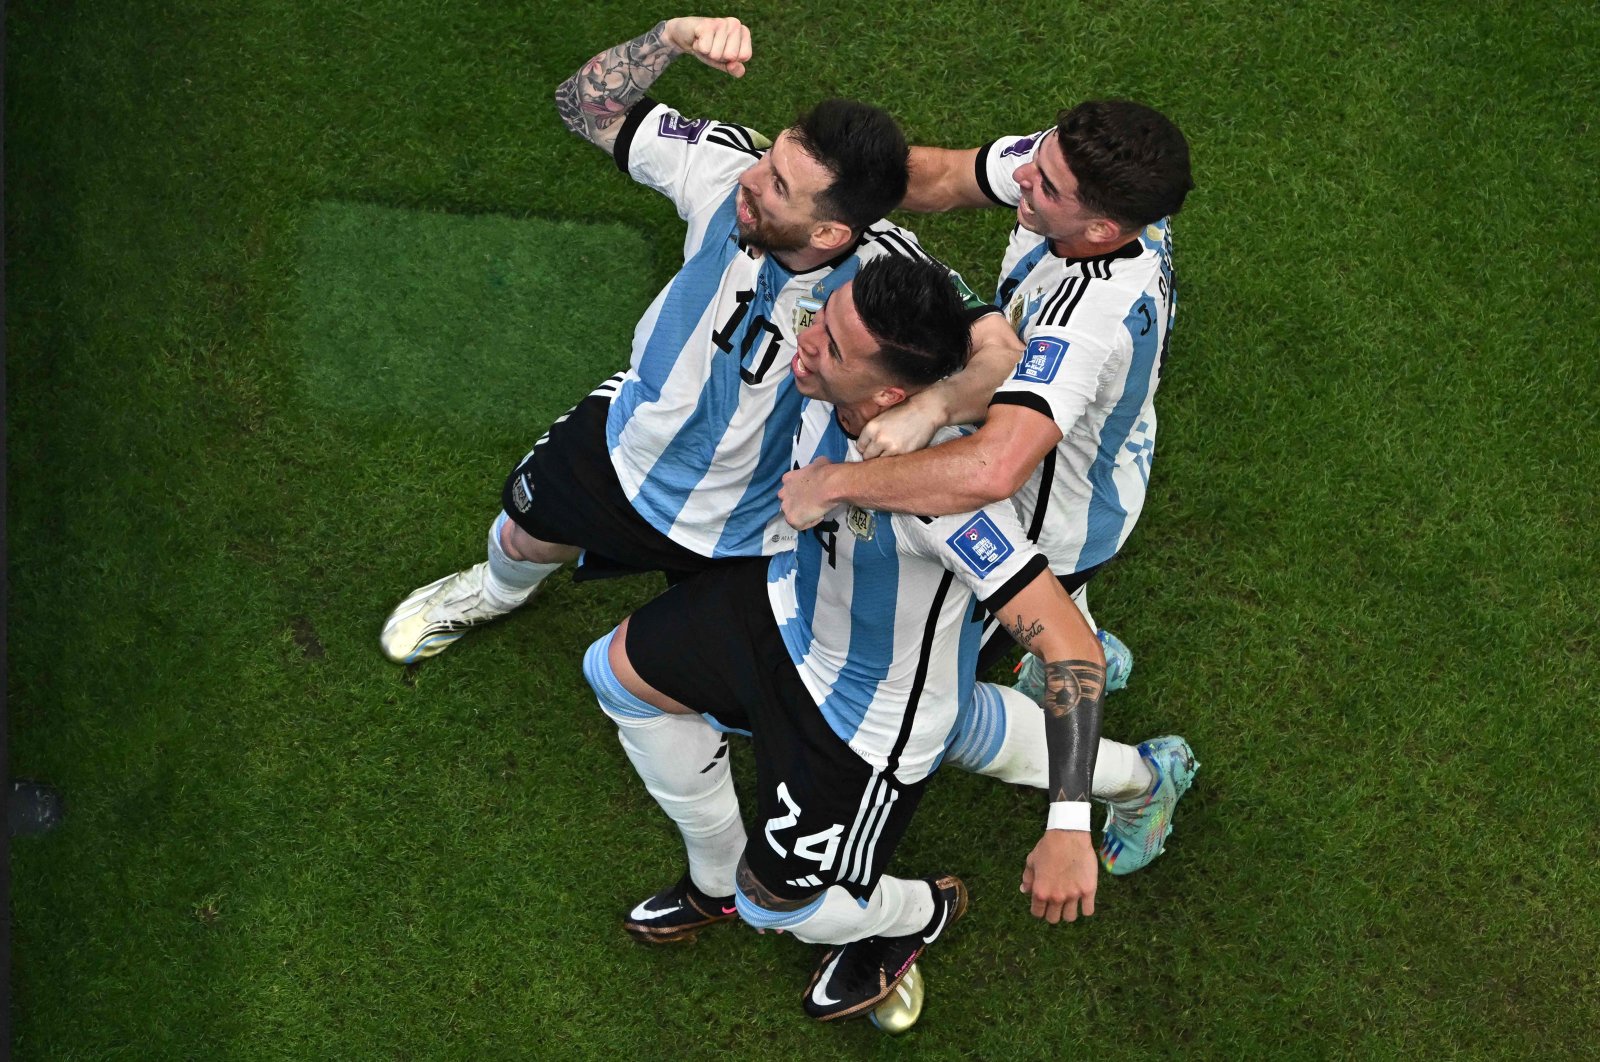 Keajaiban Messi memberi harapan Argentina di Piala Dunia dengan kemenangan 2-0 Meksiko